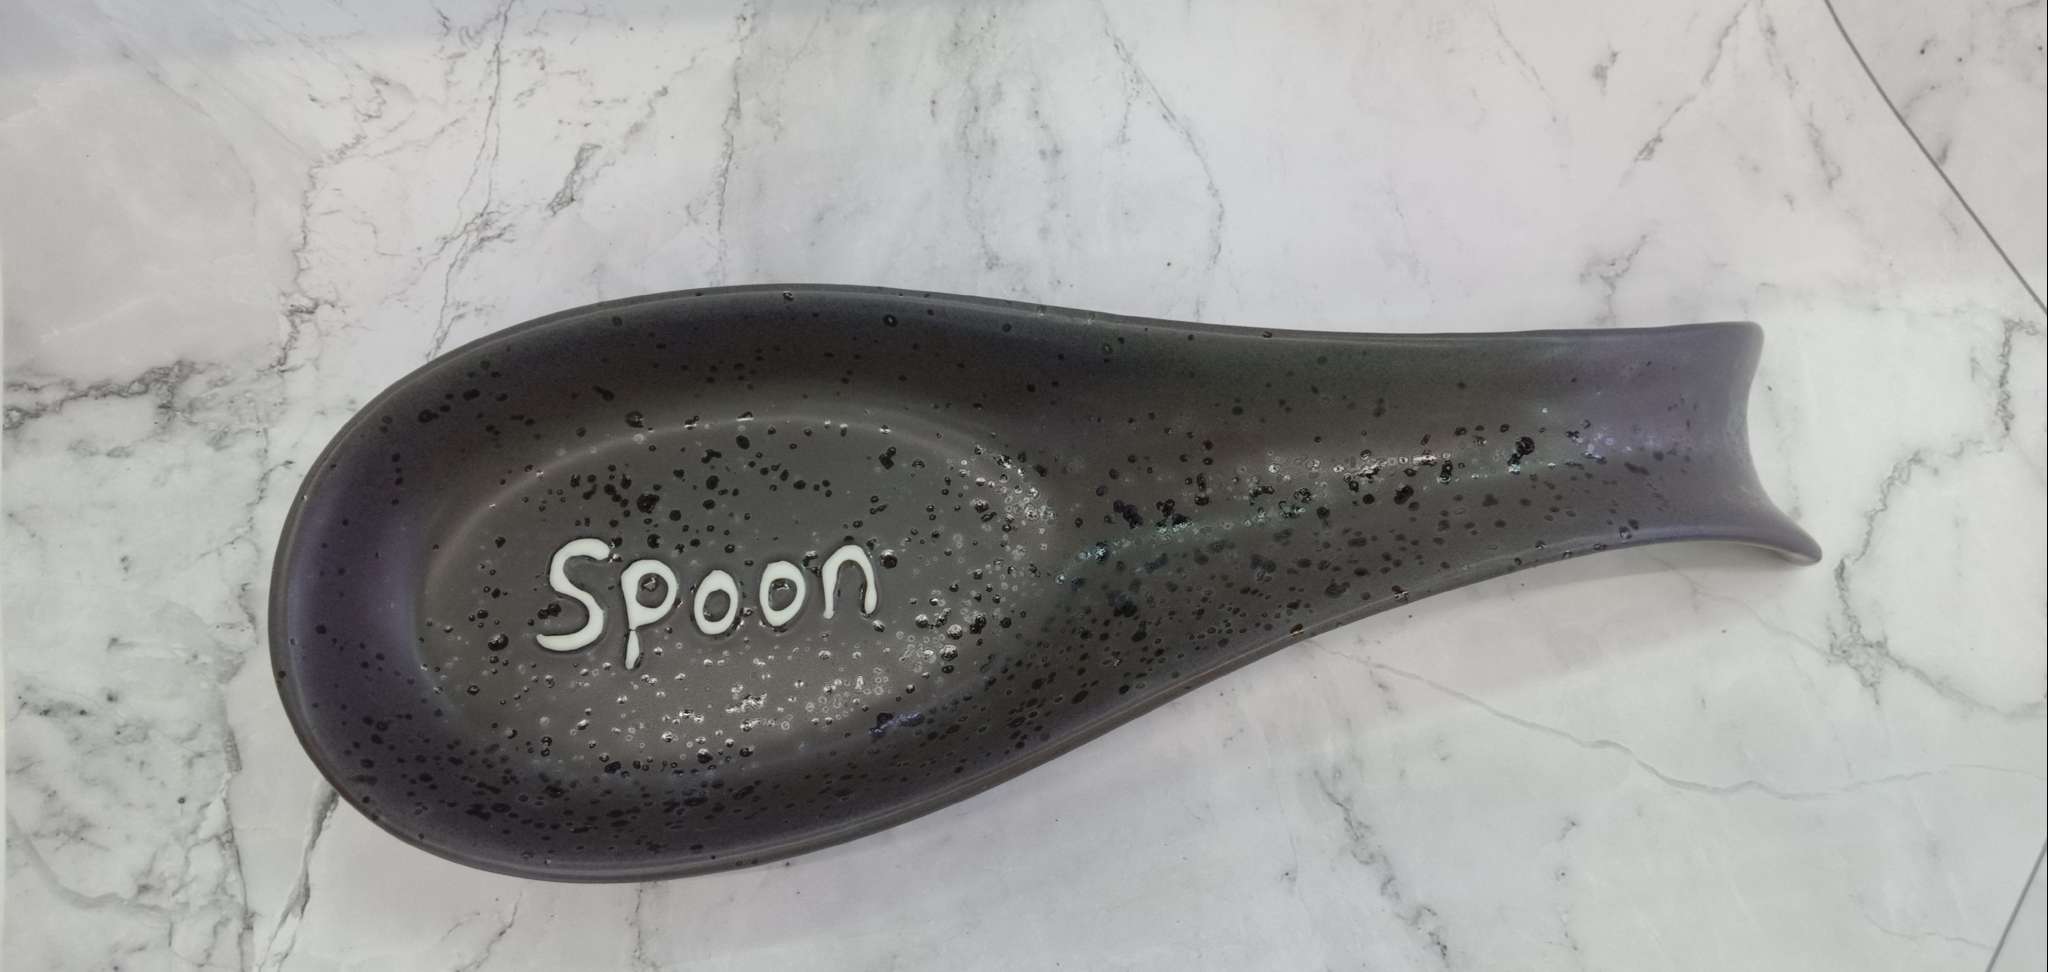 Spoon holder 深咖色刀叉陶瓷勺垫 厨具锅铲垫